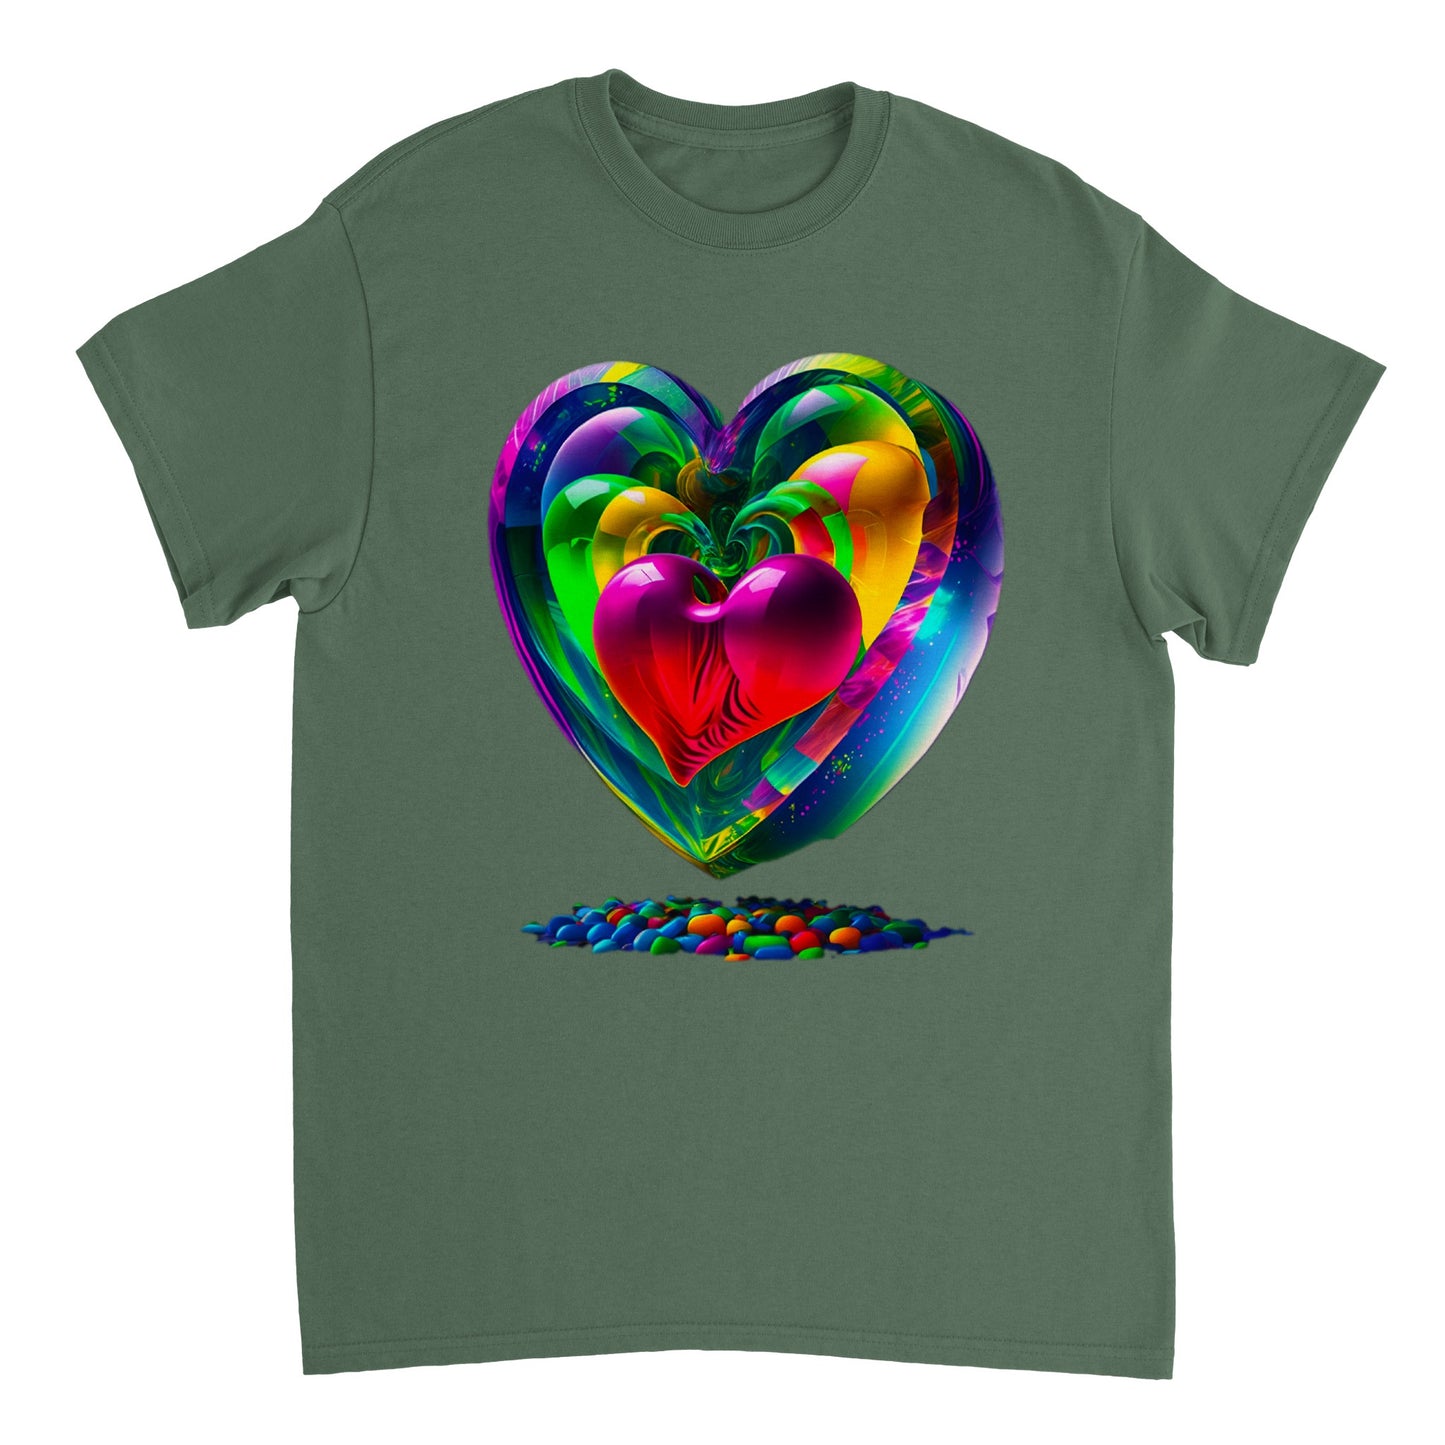 Love Heart - Heavyweight Unisex Crewneck T-shirt 88